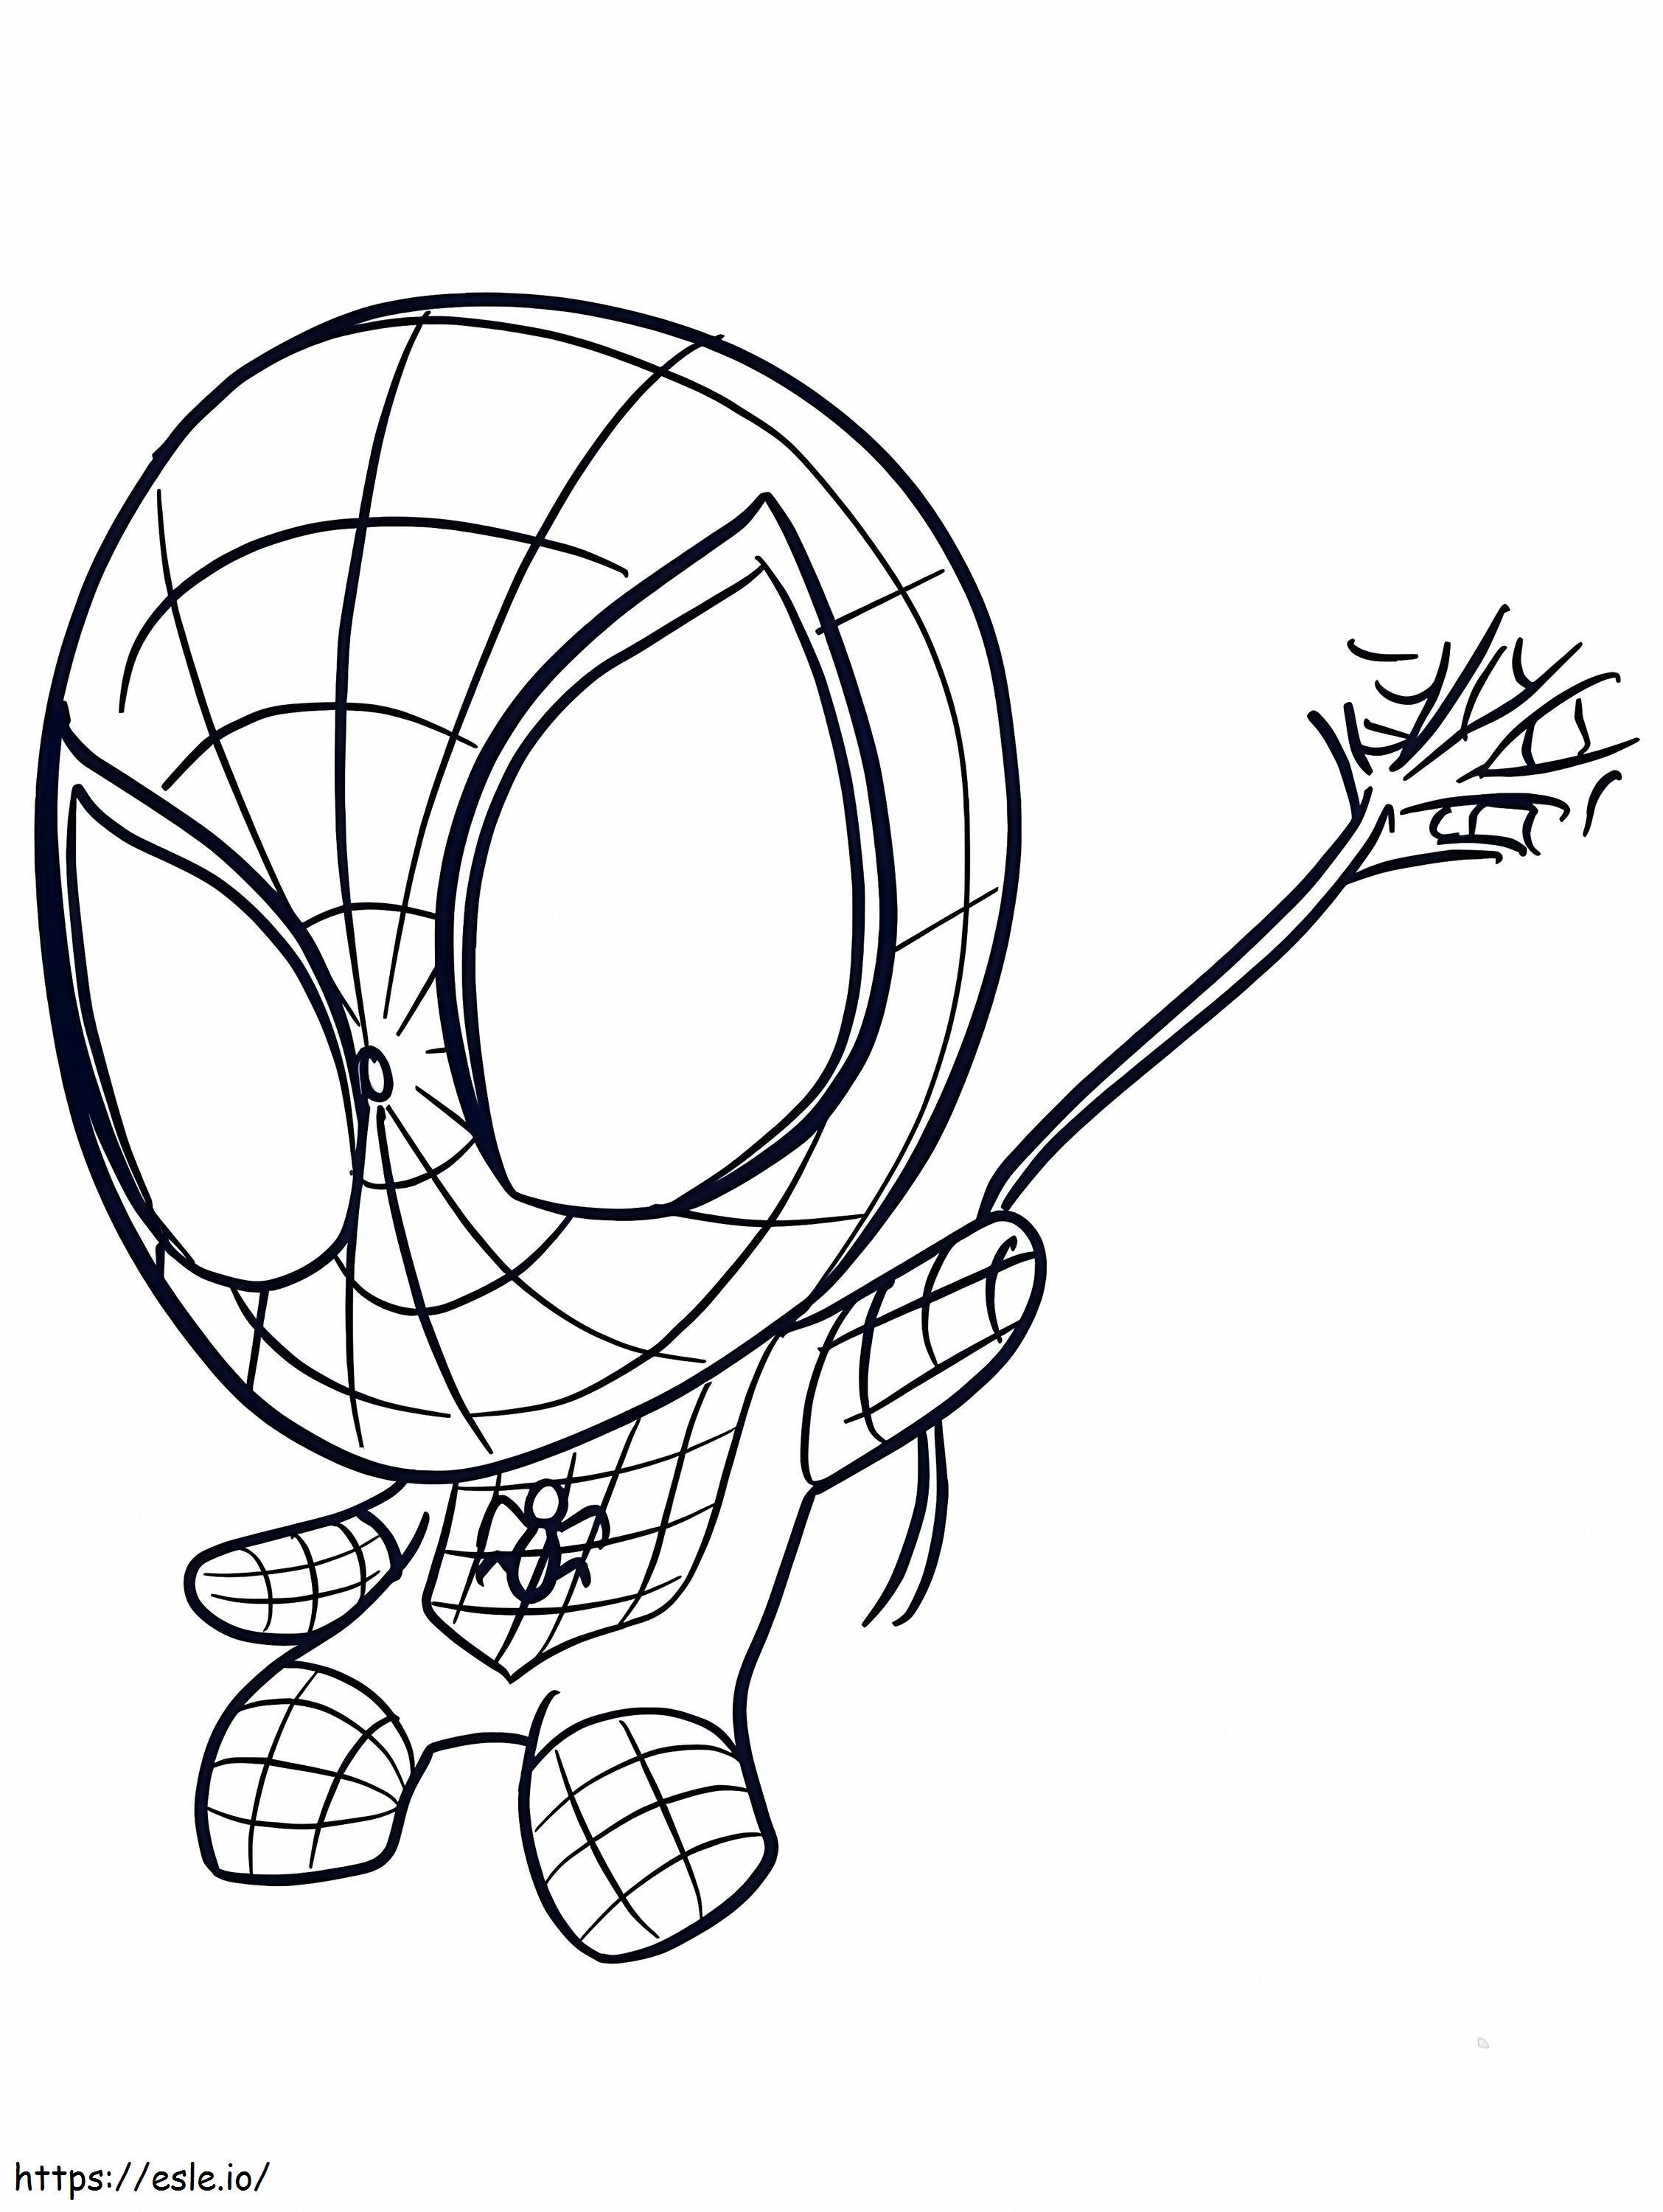 Spiderman Mignon coloring page